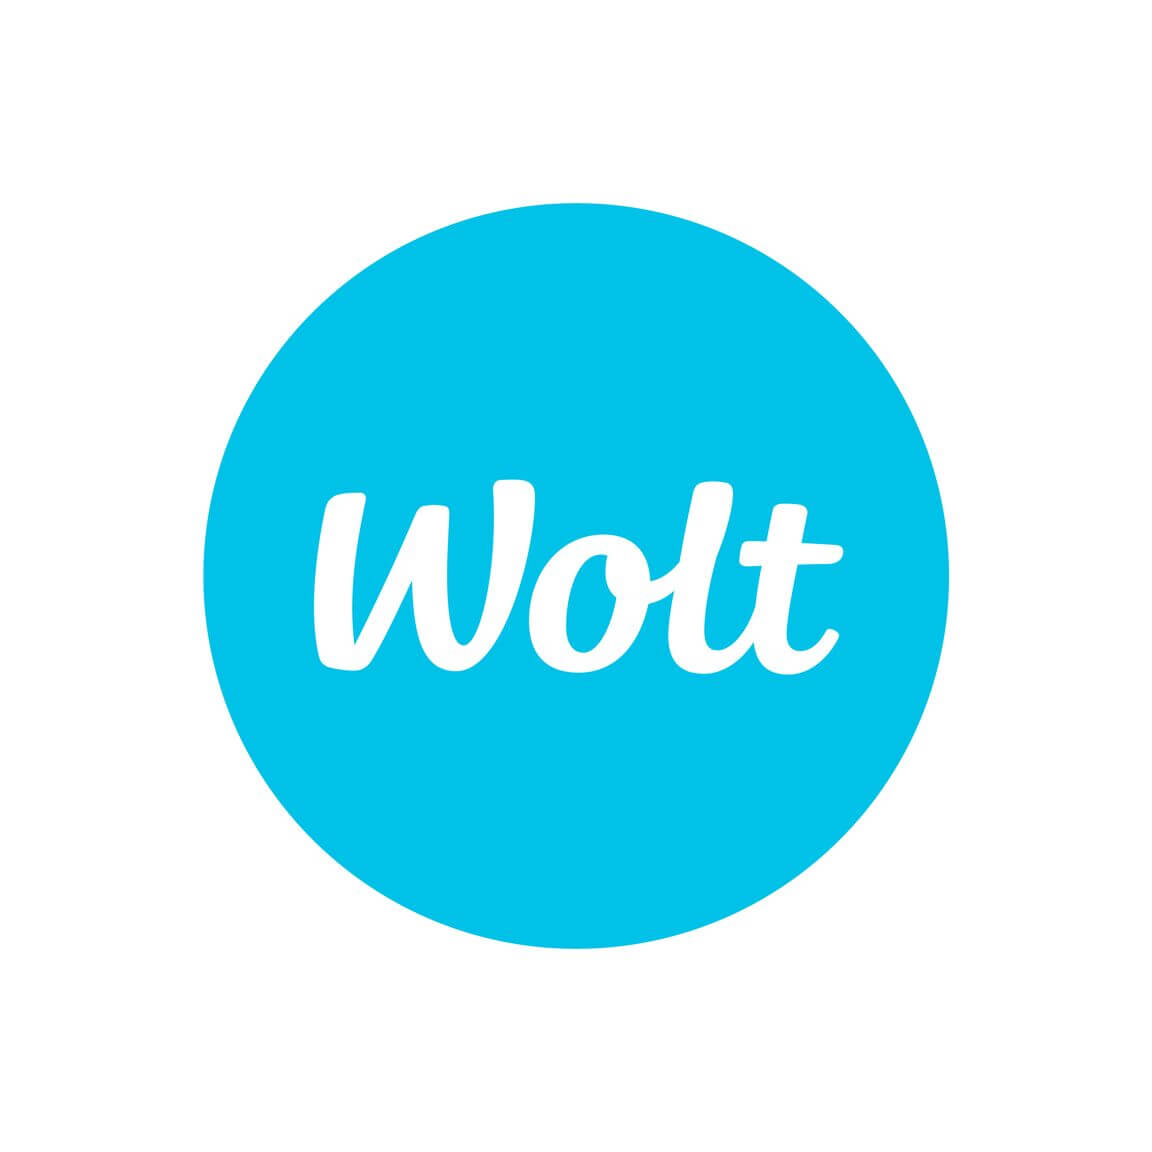 デリバリーサービス『Wolt』